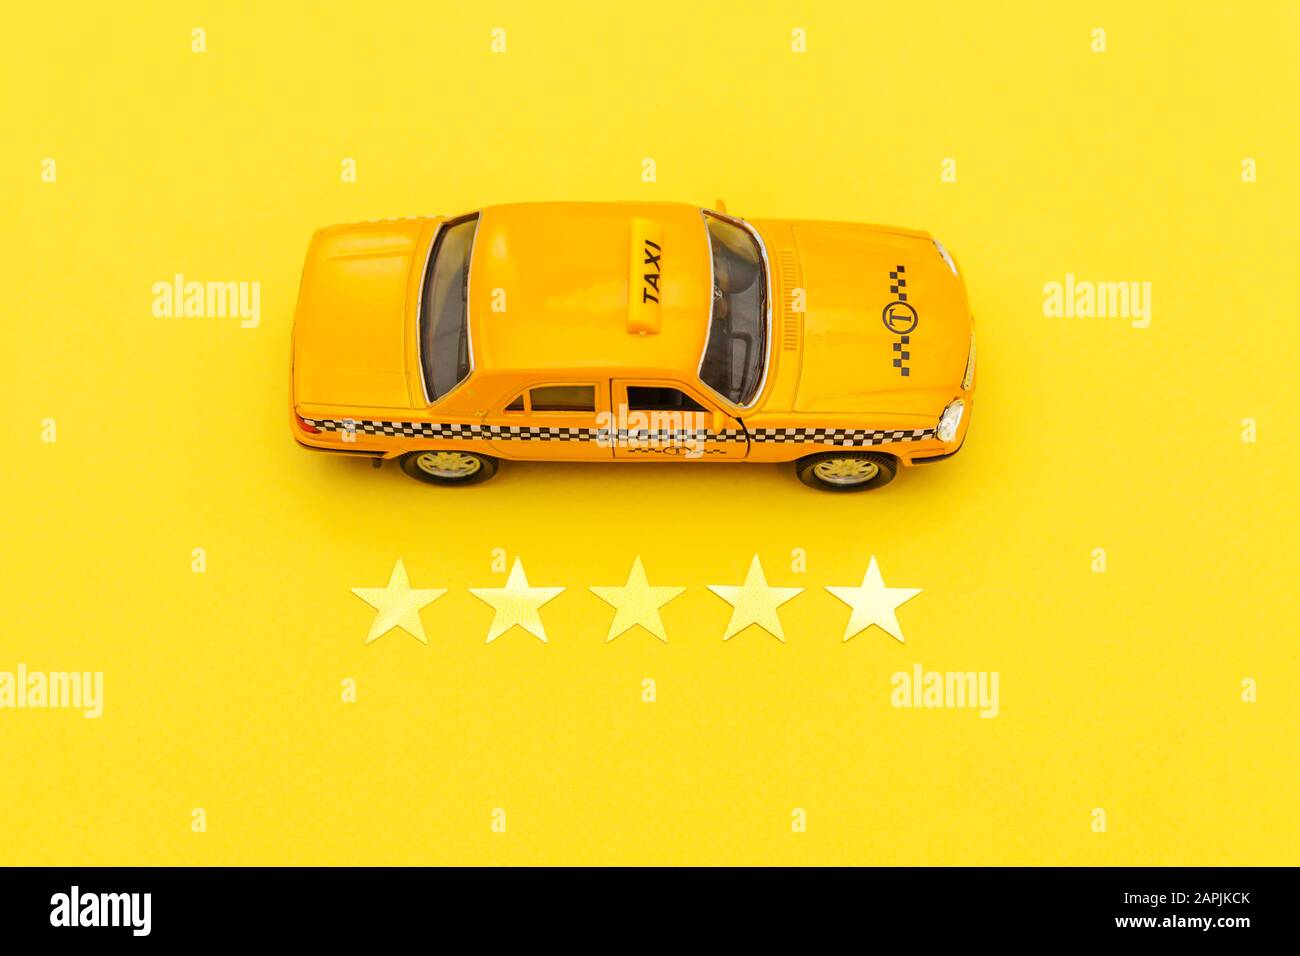 Voiture jouet jaune taxi cabine et 5 étoiles notation isolée sur fond  jaune. Application smartphone de service de taxi pour la recherche en ligne  appel et réservation de concept CAB. Symbole taxi.